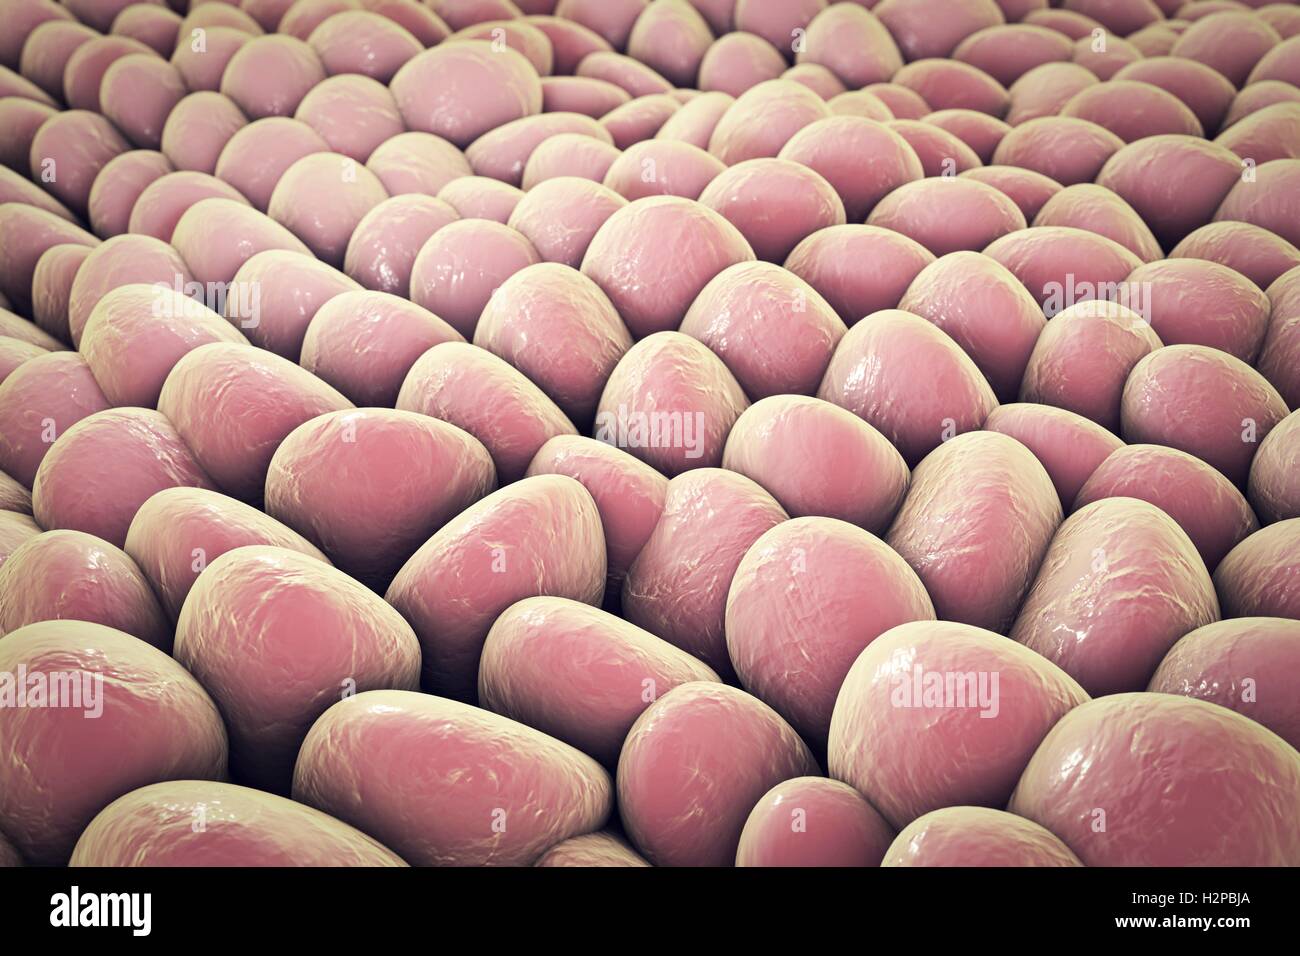 Monolage menschlicher Zellen. Computer Bild, die verwendet werden kann, um Labor Gewebekulturen, menschliche Haut oder Schleimhaut Zellen zu veranschaulichen. Stockfoto